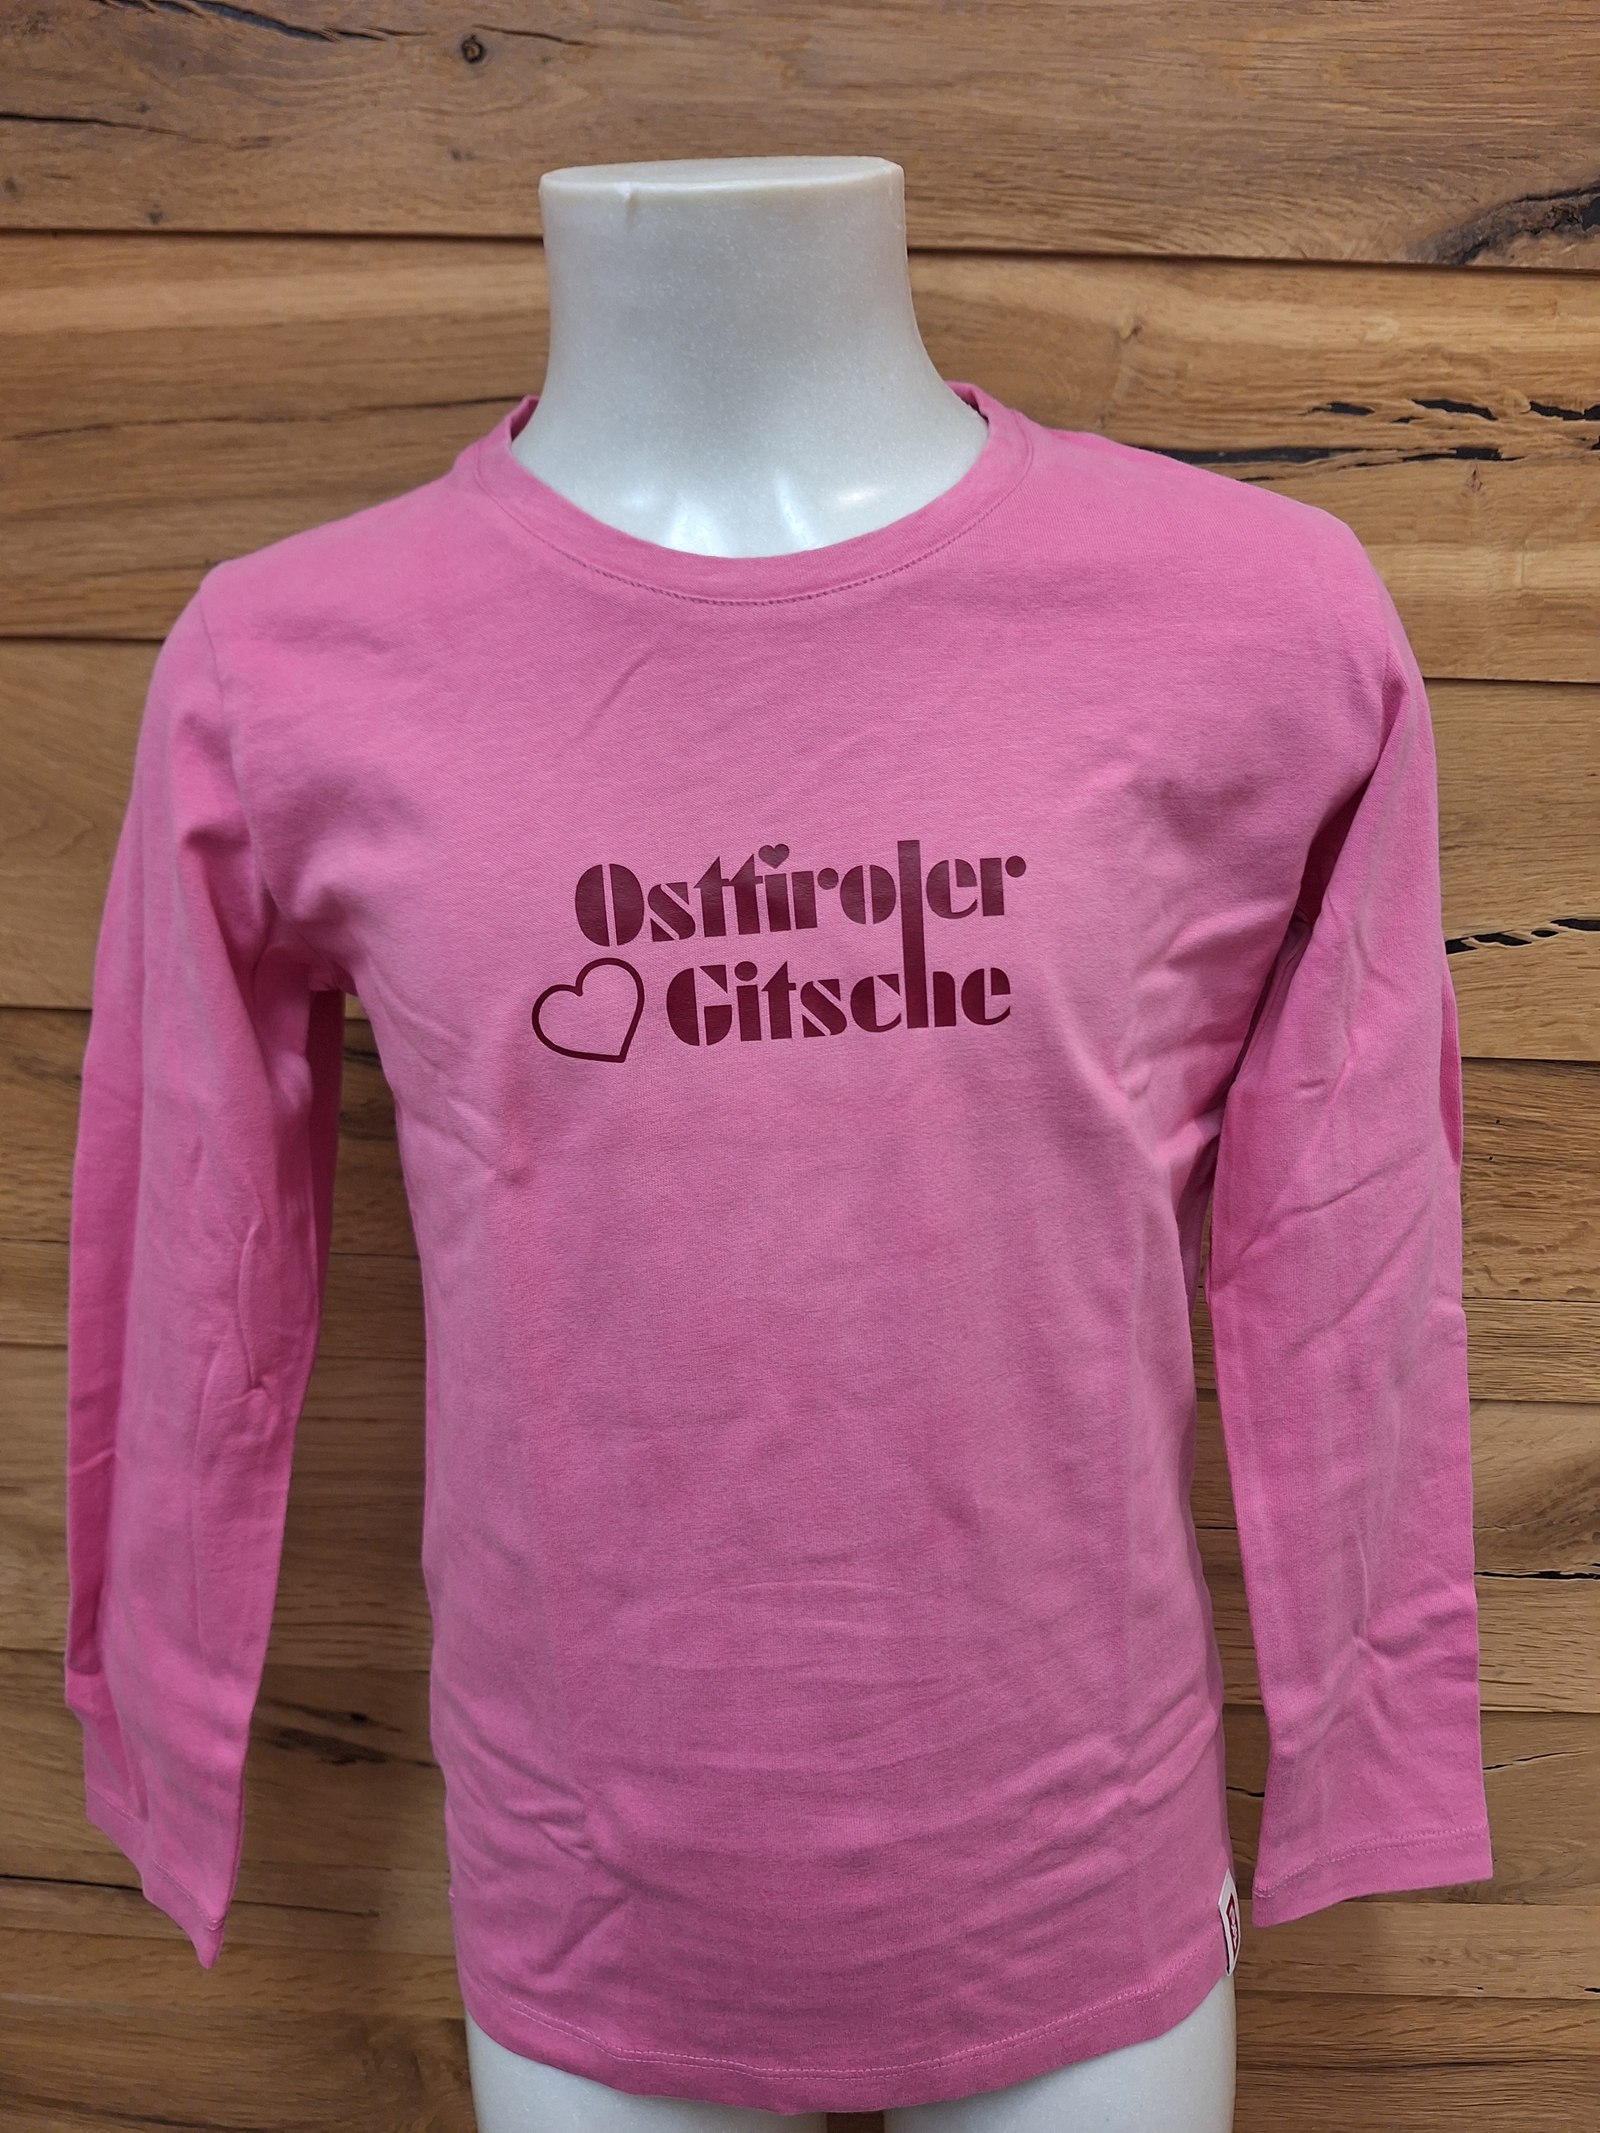 Kinder Longsleeve "Osttiroler Gitsche" pink